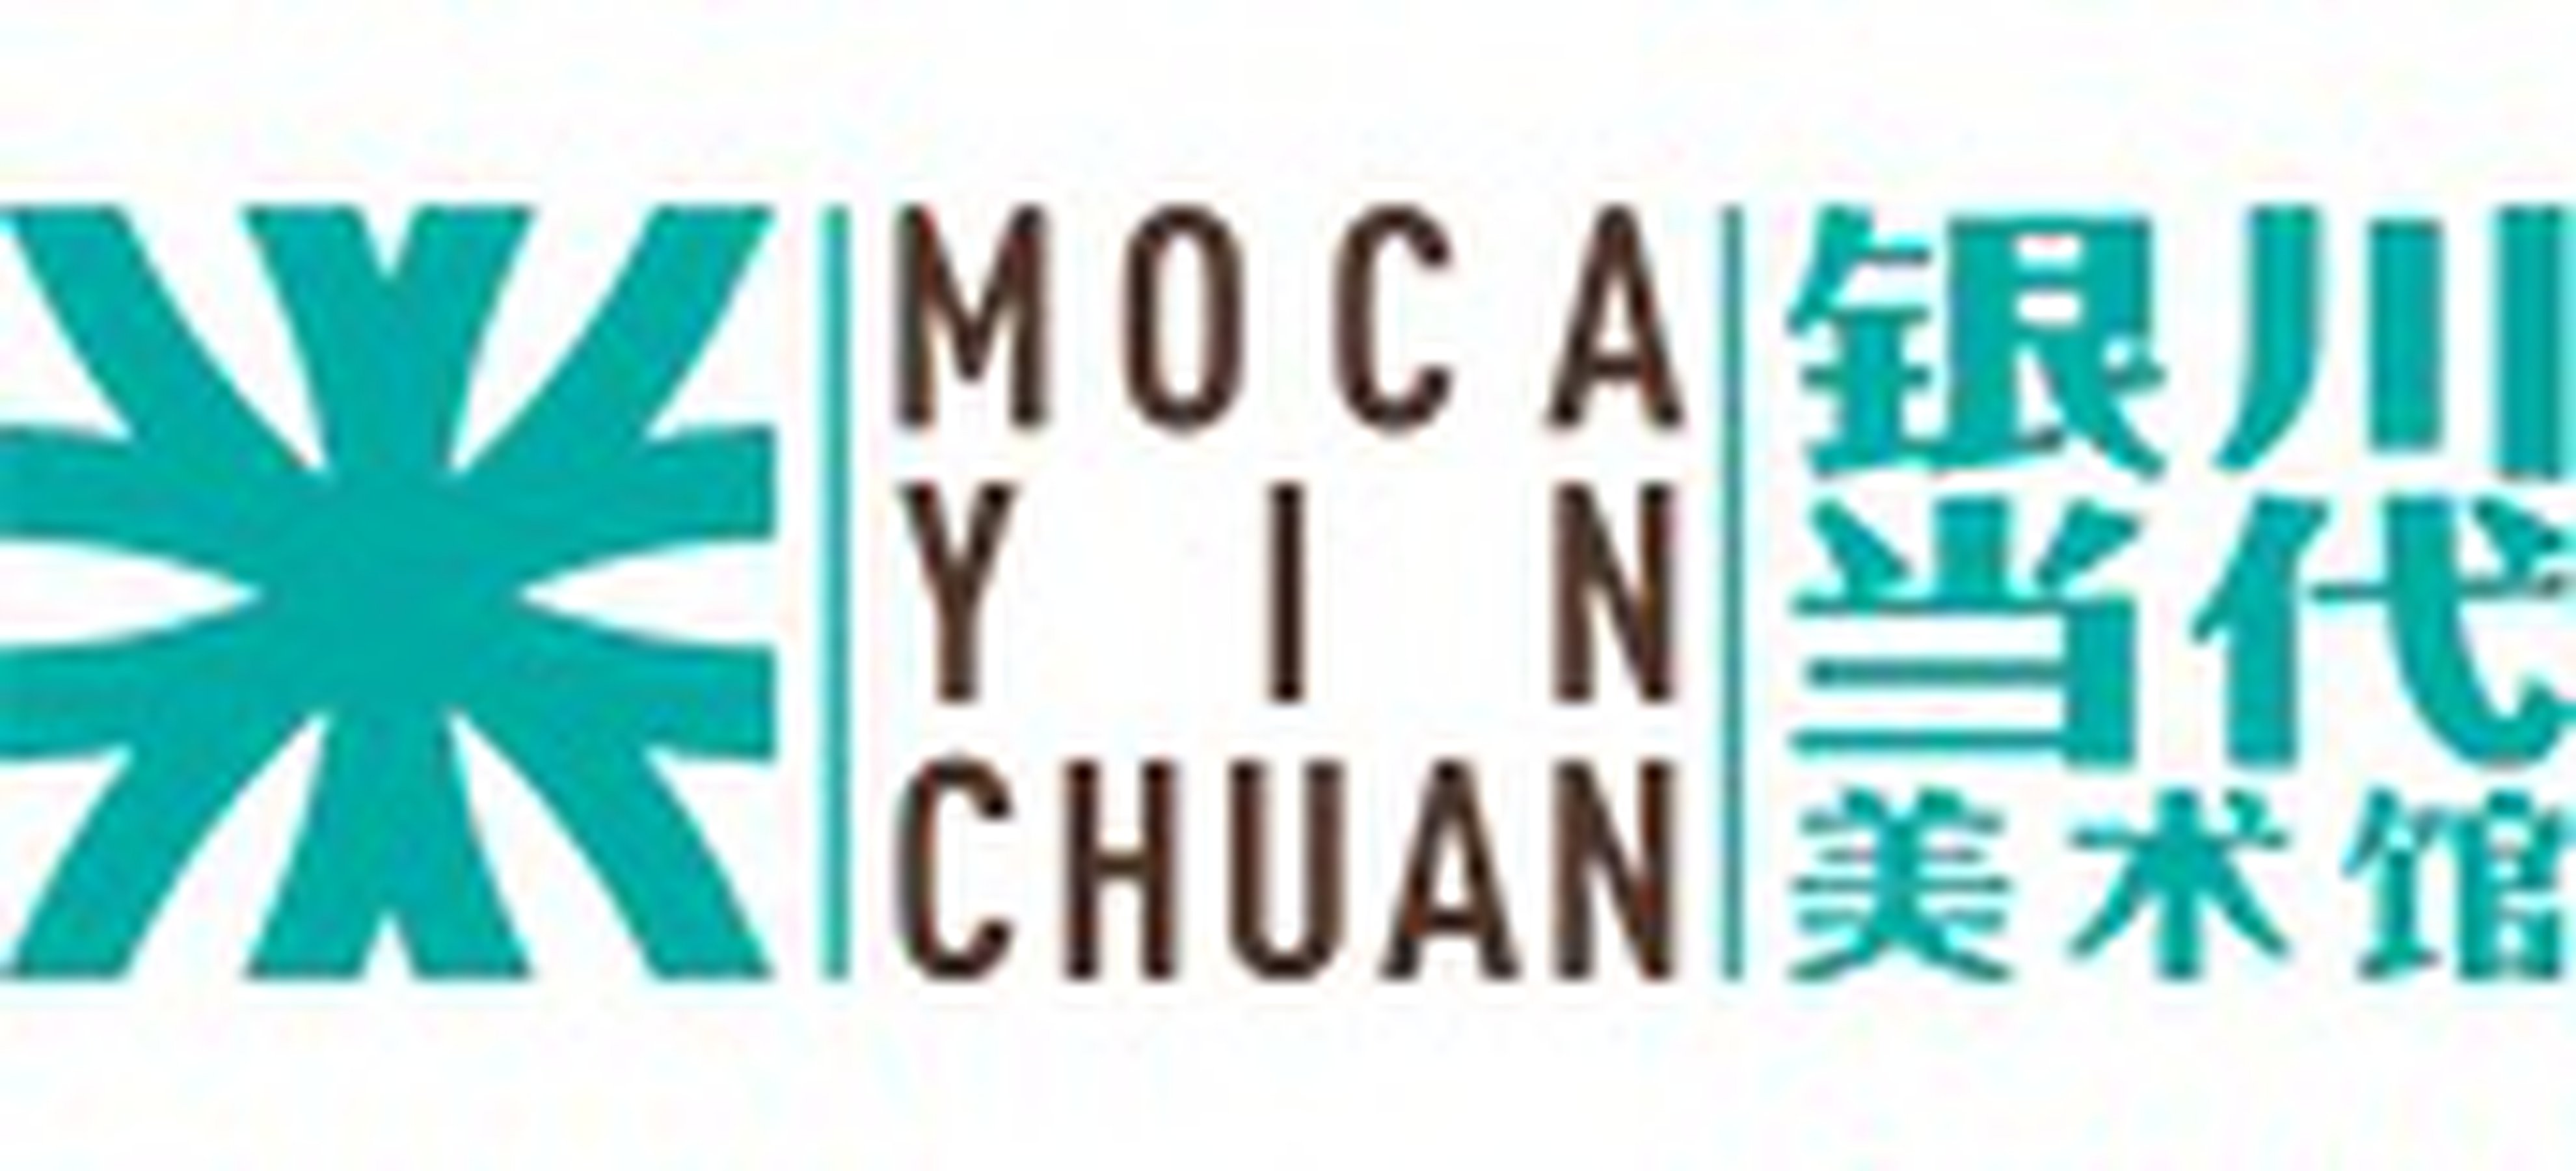 Yinchuan Biennale